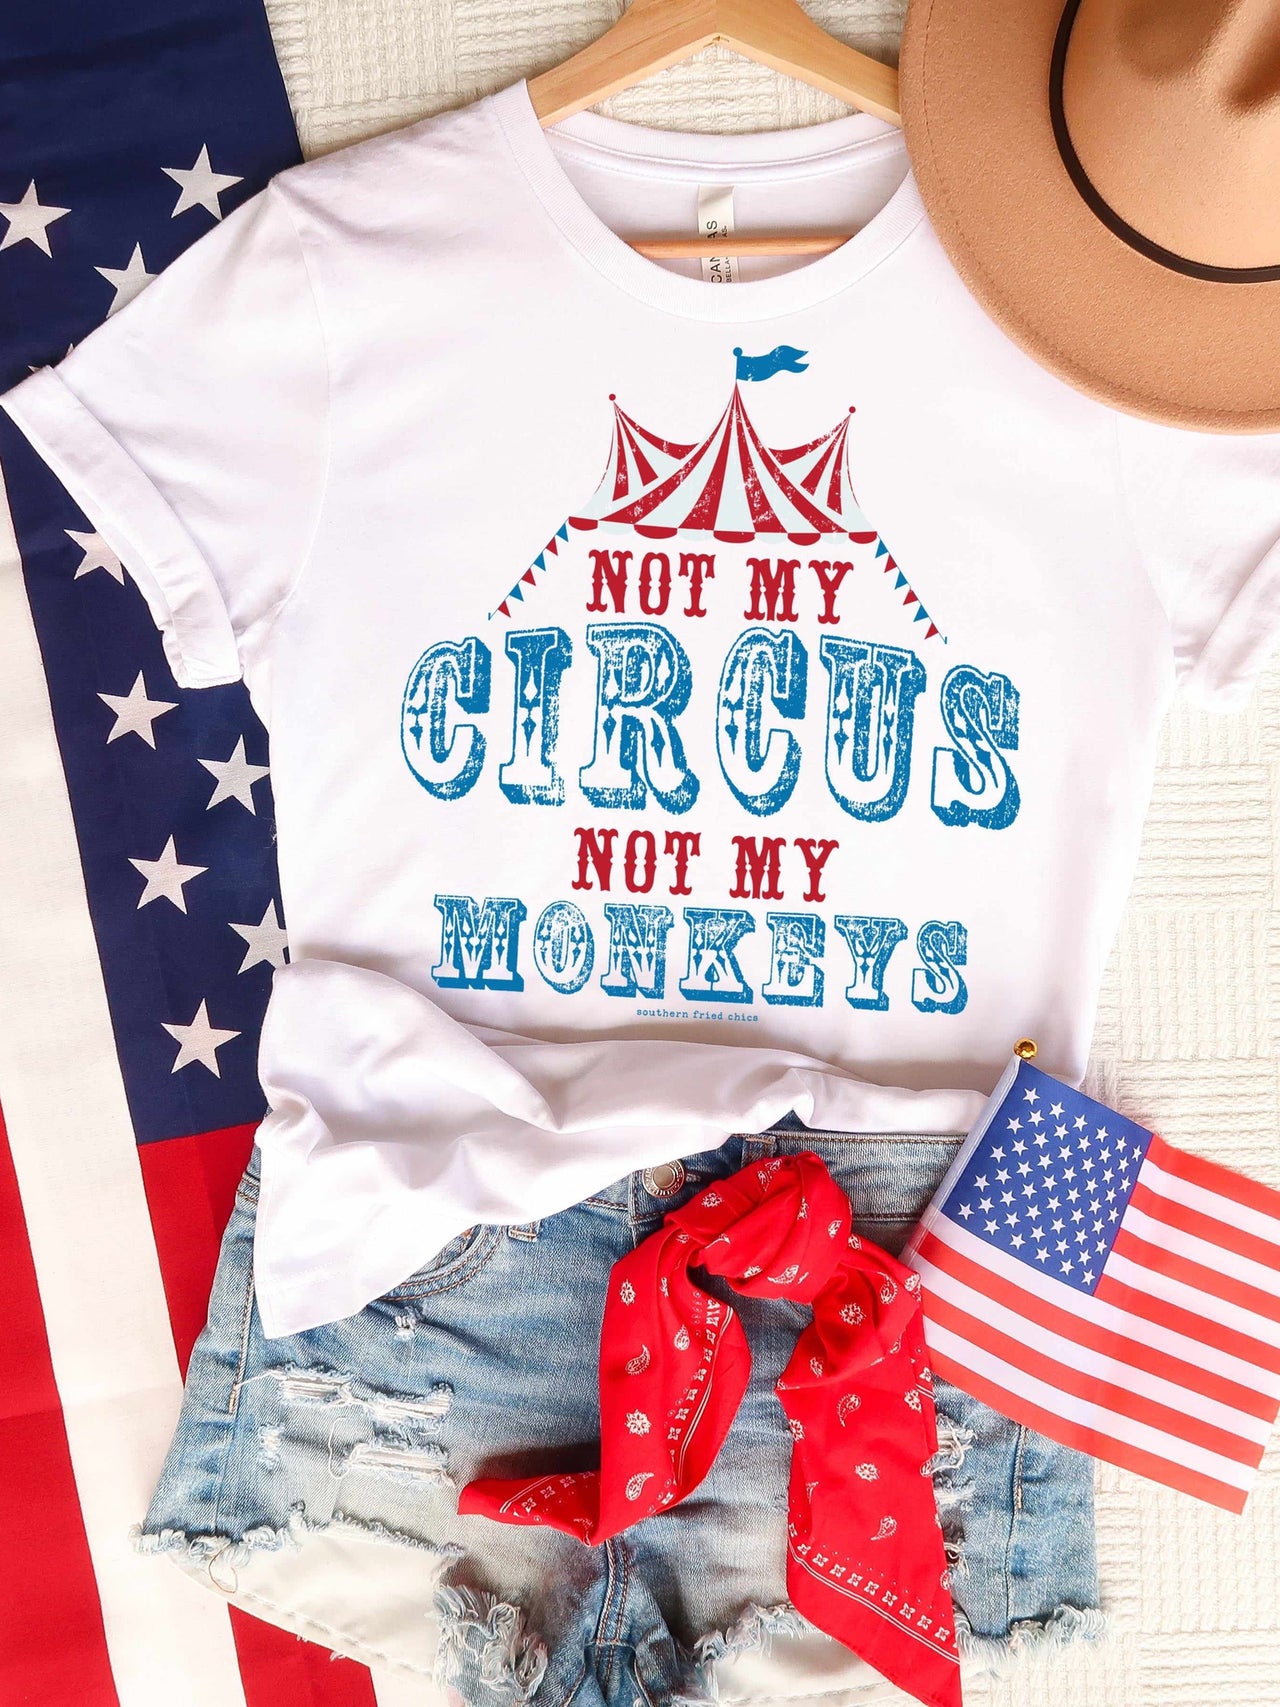 Not My Circus T-Shirt